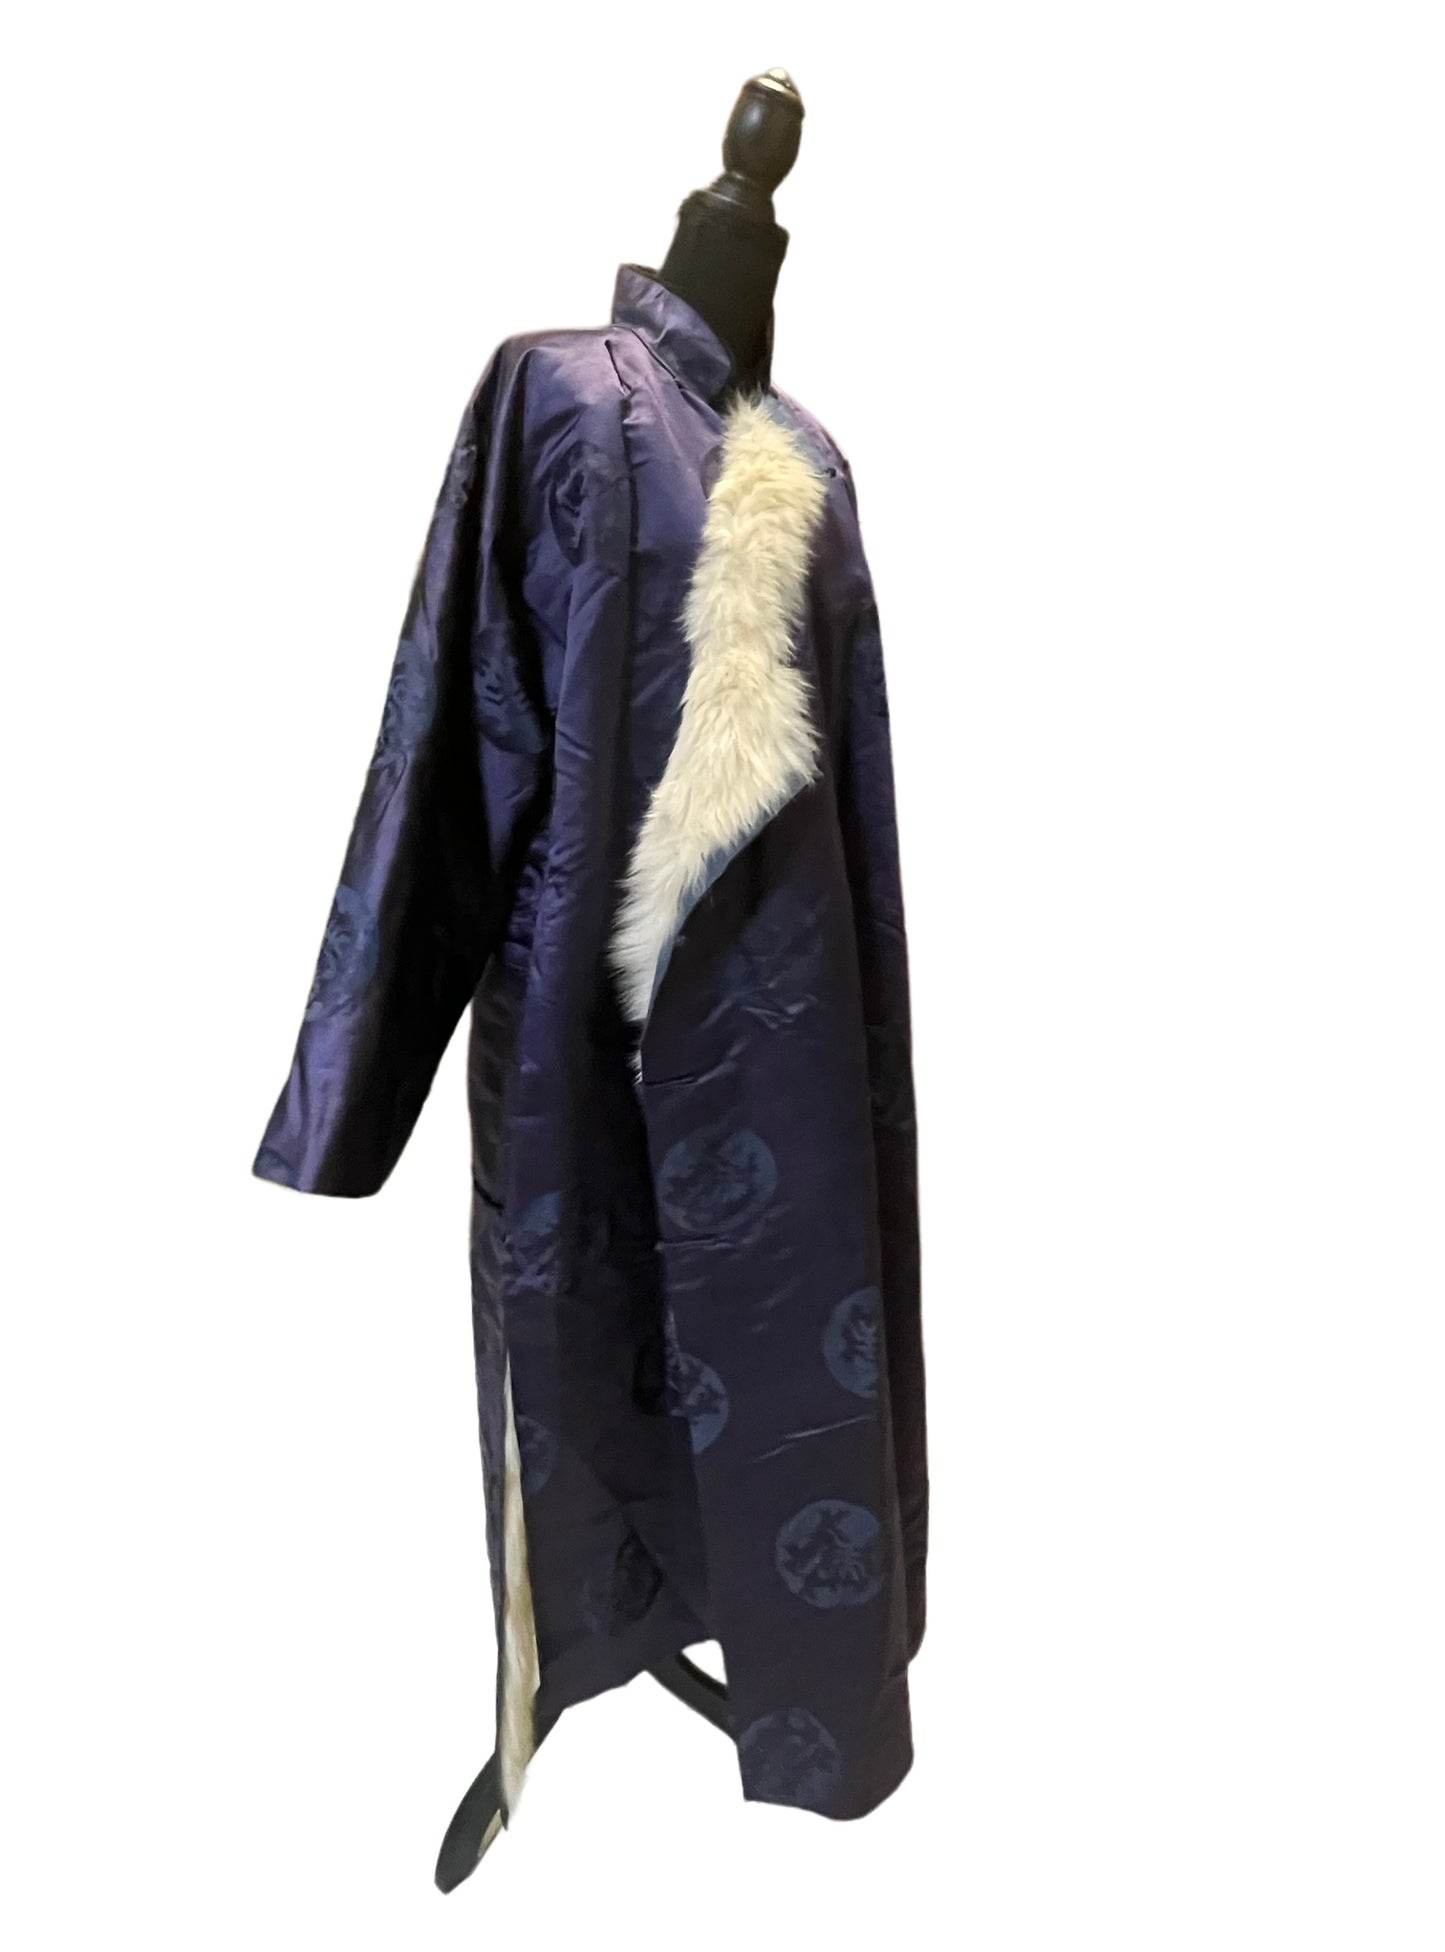 A fur lined women’s winter robe